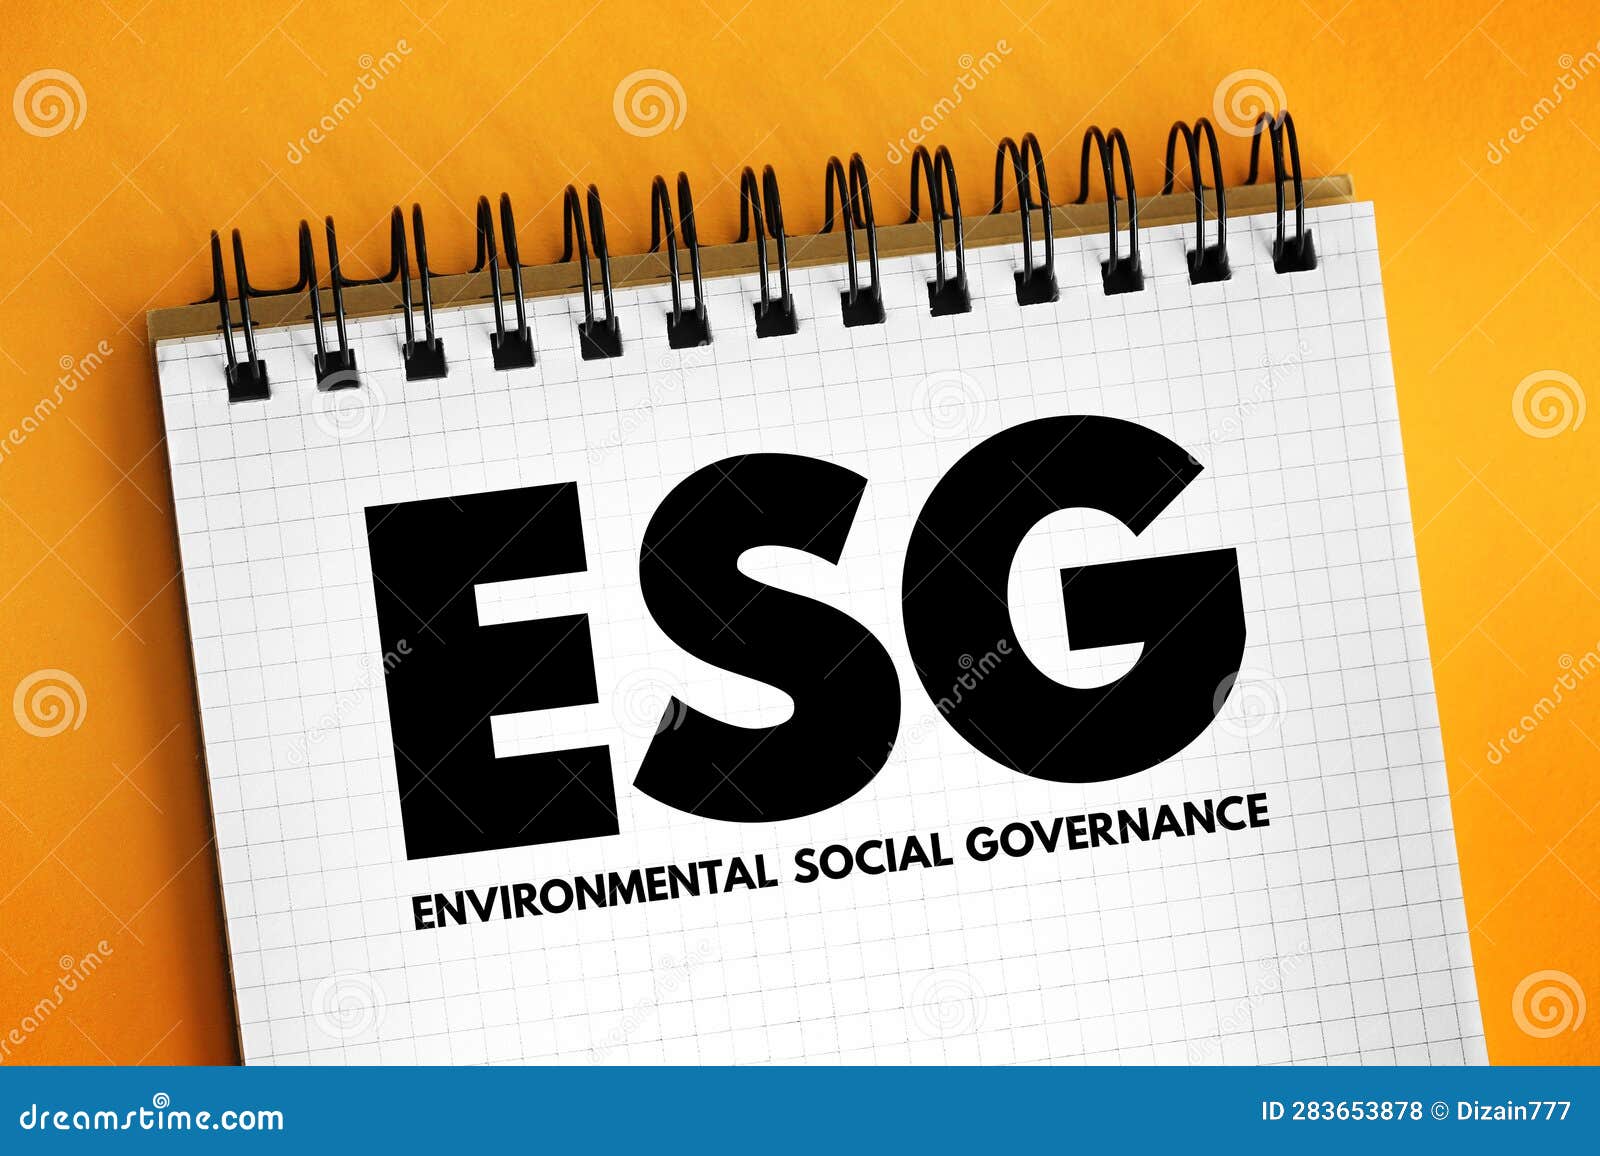 esg - environmental social governance acronym - evaluation of a firmâs collective consciousness for social and environmental